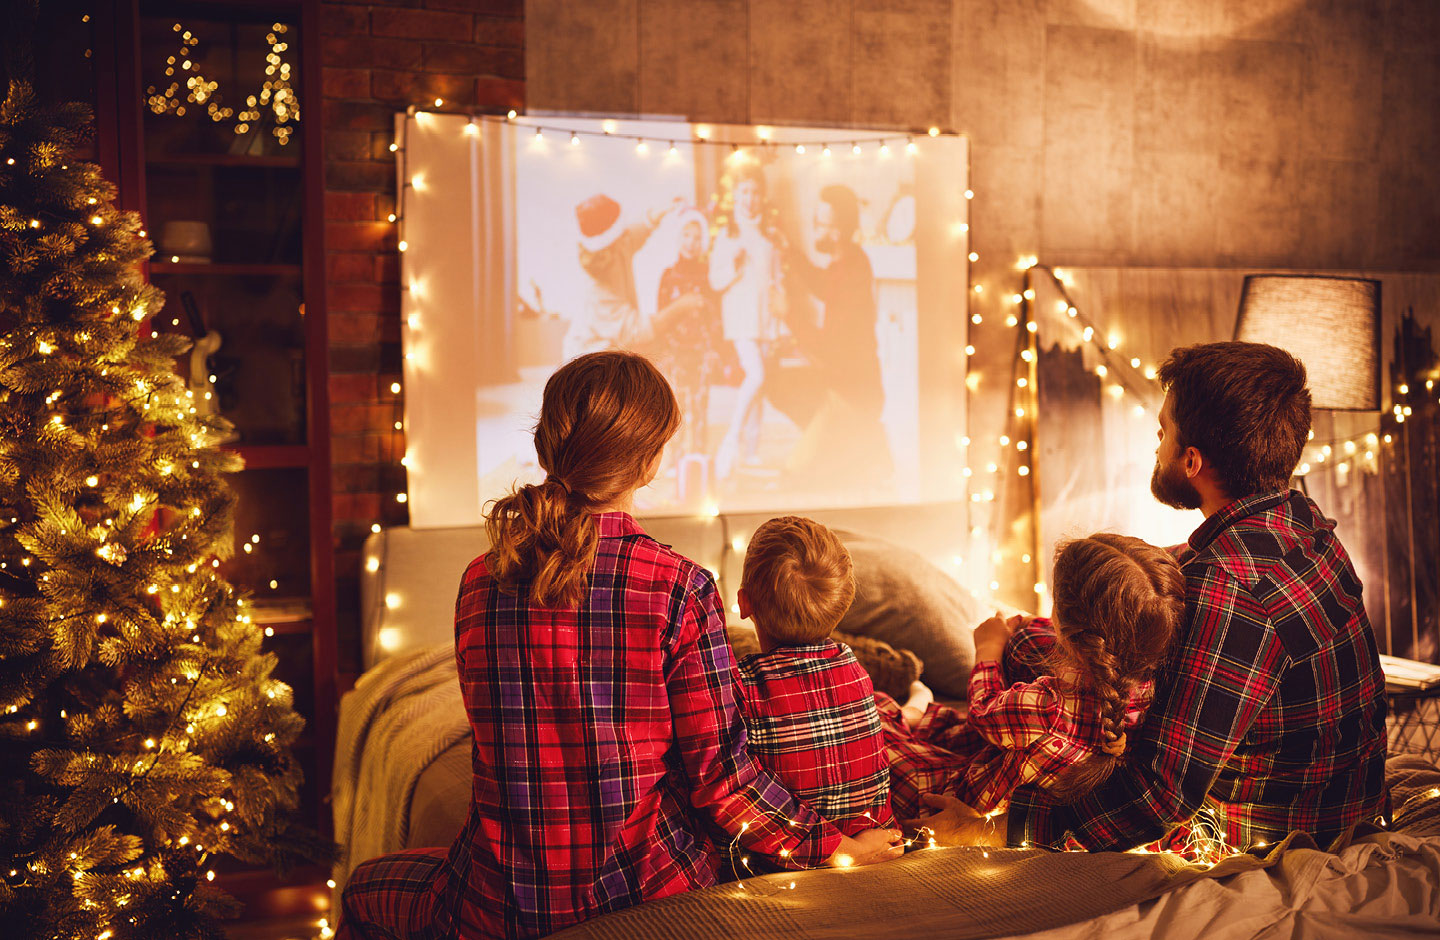 Familie guckt zusammen zuhause auf einer Leinwand einen Weihnachtsfilm.